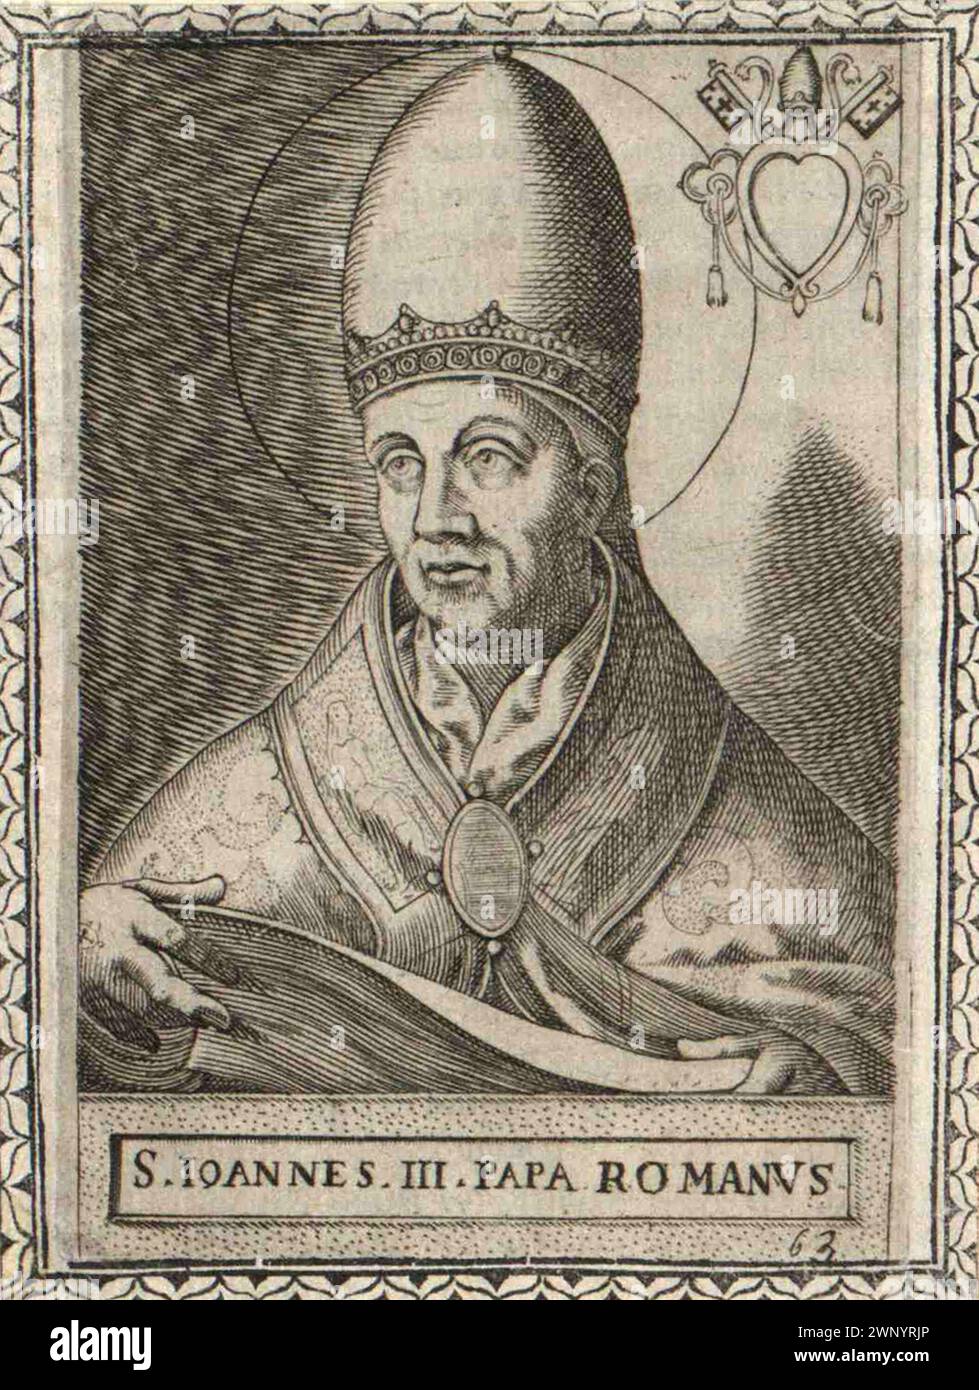 Ein Kupferstich von Papst Johannes III. (Auch bekannt als Papst Johannes III. Oder Ioannes III.) aus dem 16. Jahrhundert, der von 561 bis 574 Papst war. Er war der 61. Papst und der zweite, der einen angenommenen Namen benutzte (sein richtiger Name war Catelinus) Stockfoto